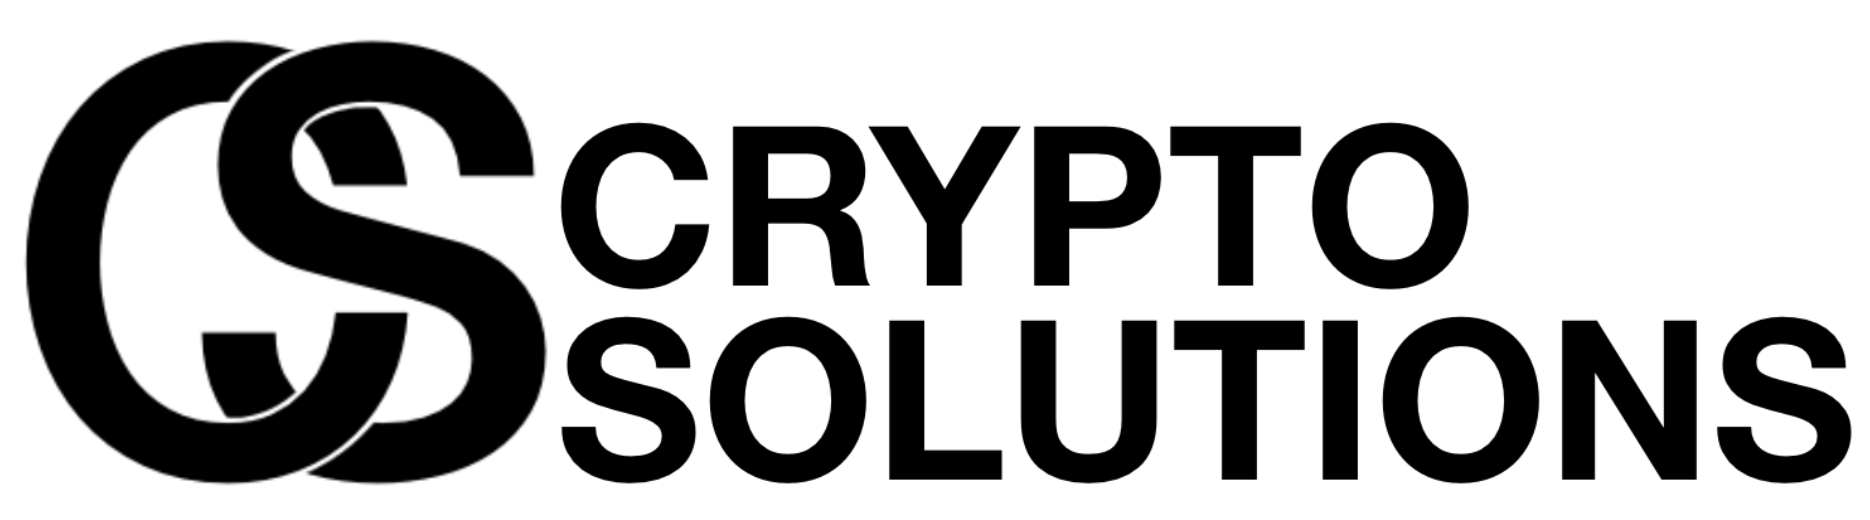 logo CS Crypto Solutions